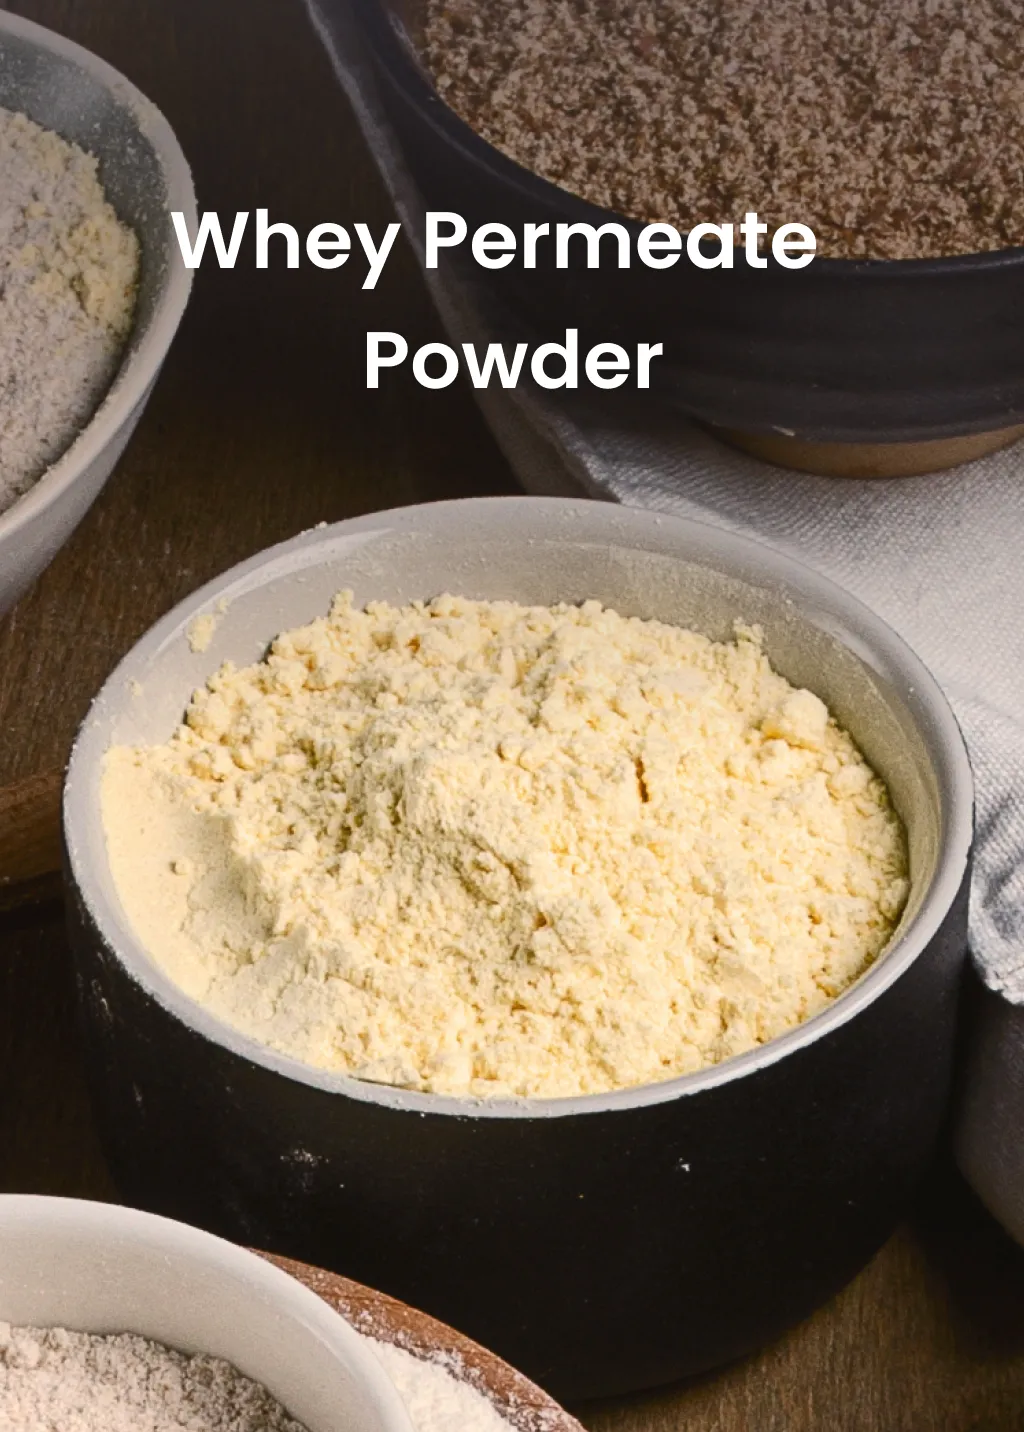 Whey Permeate Powder from Milk Powder Asia